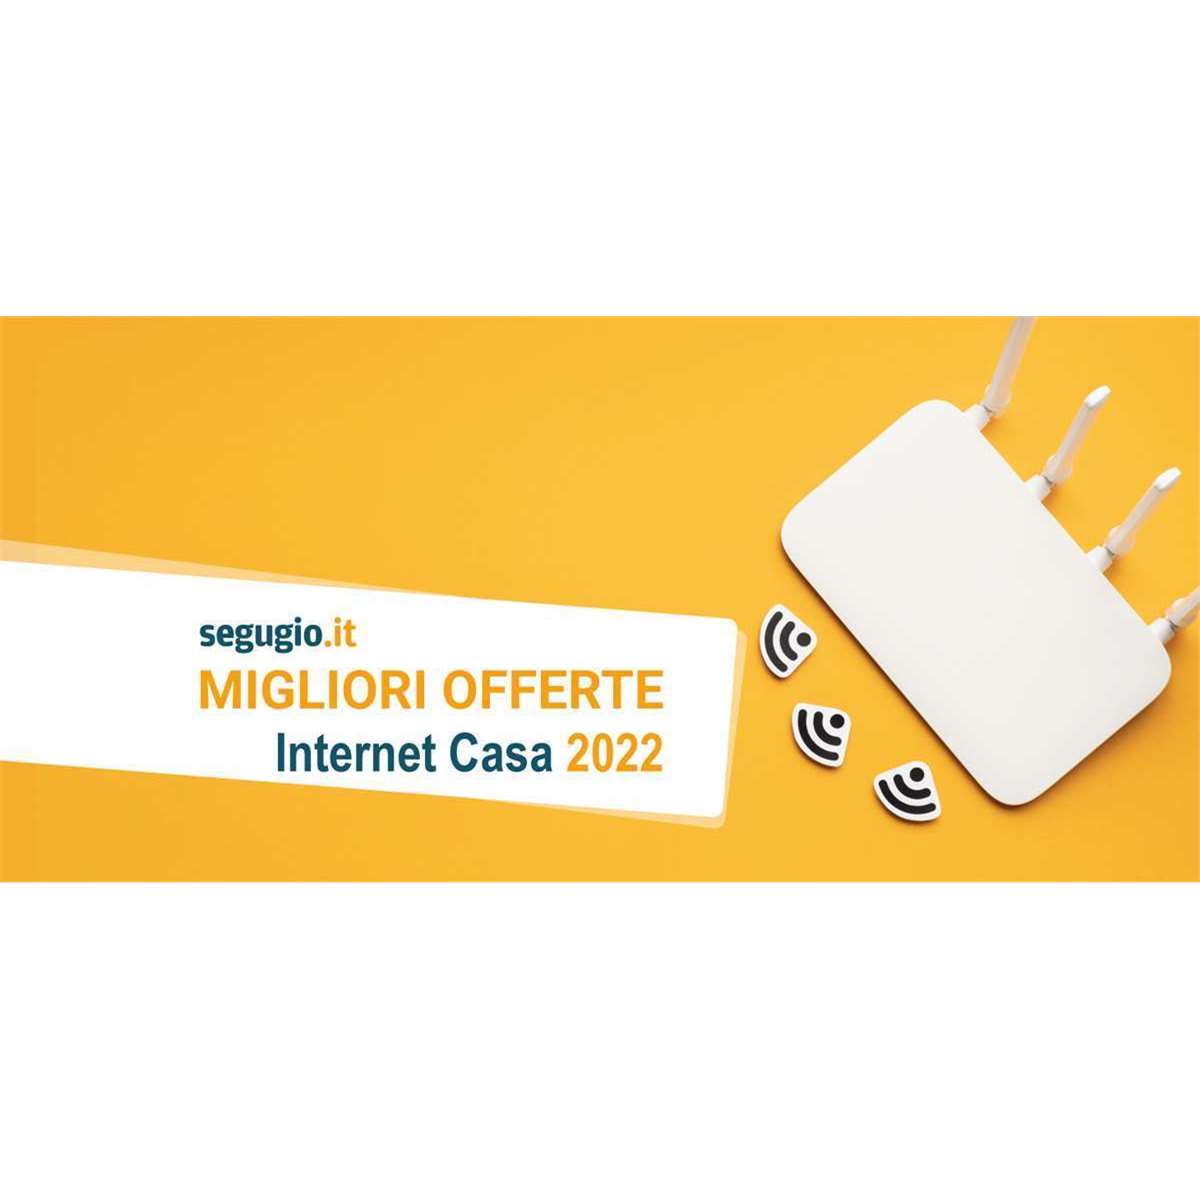 iron tape duck Le migliori offerte internet di novembre 2022 | Segugio.it